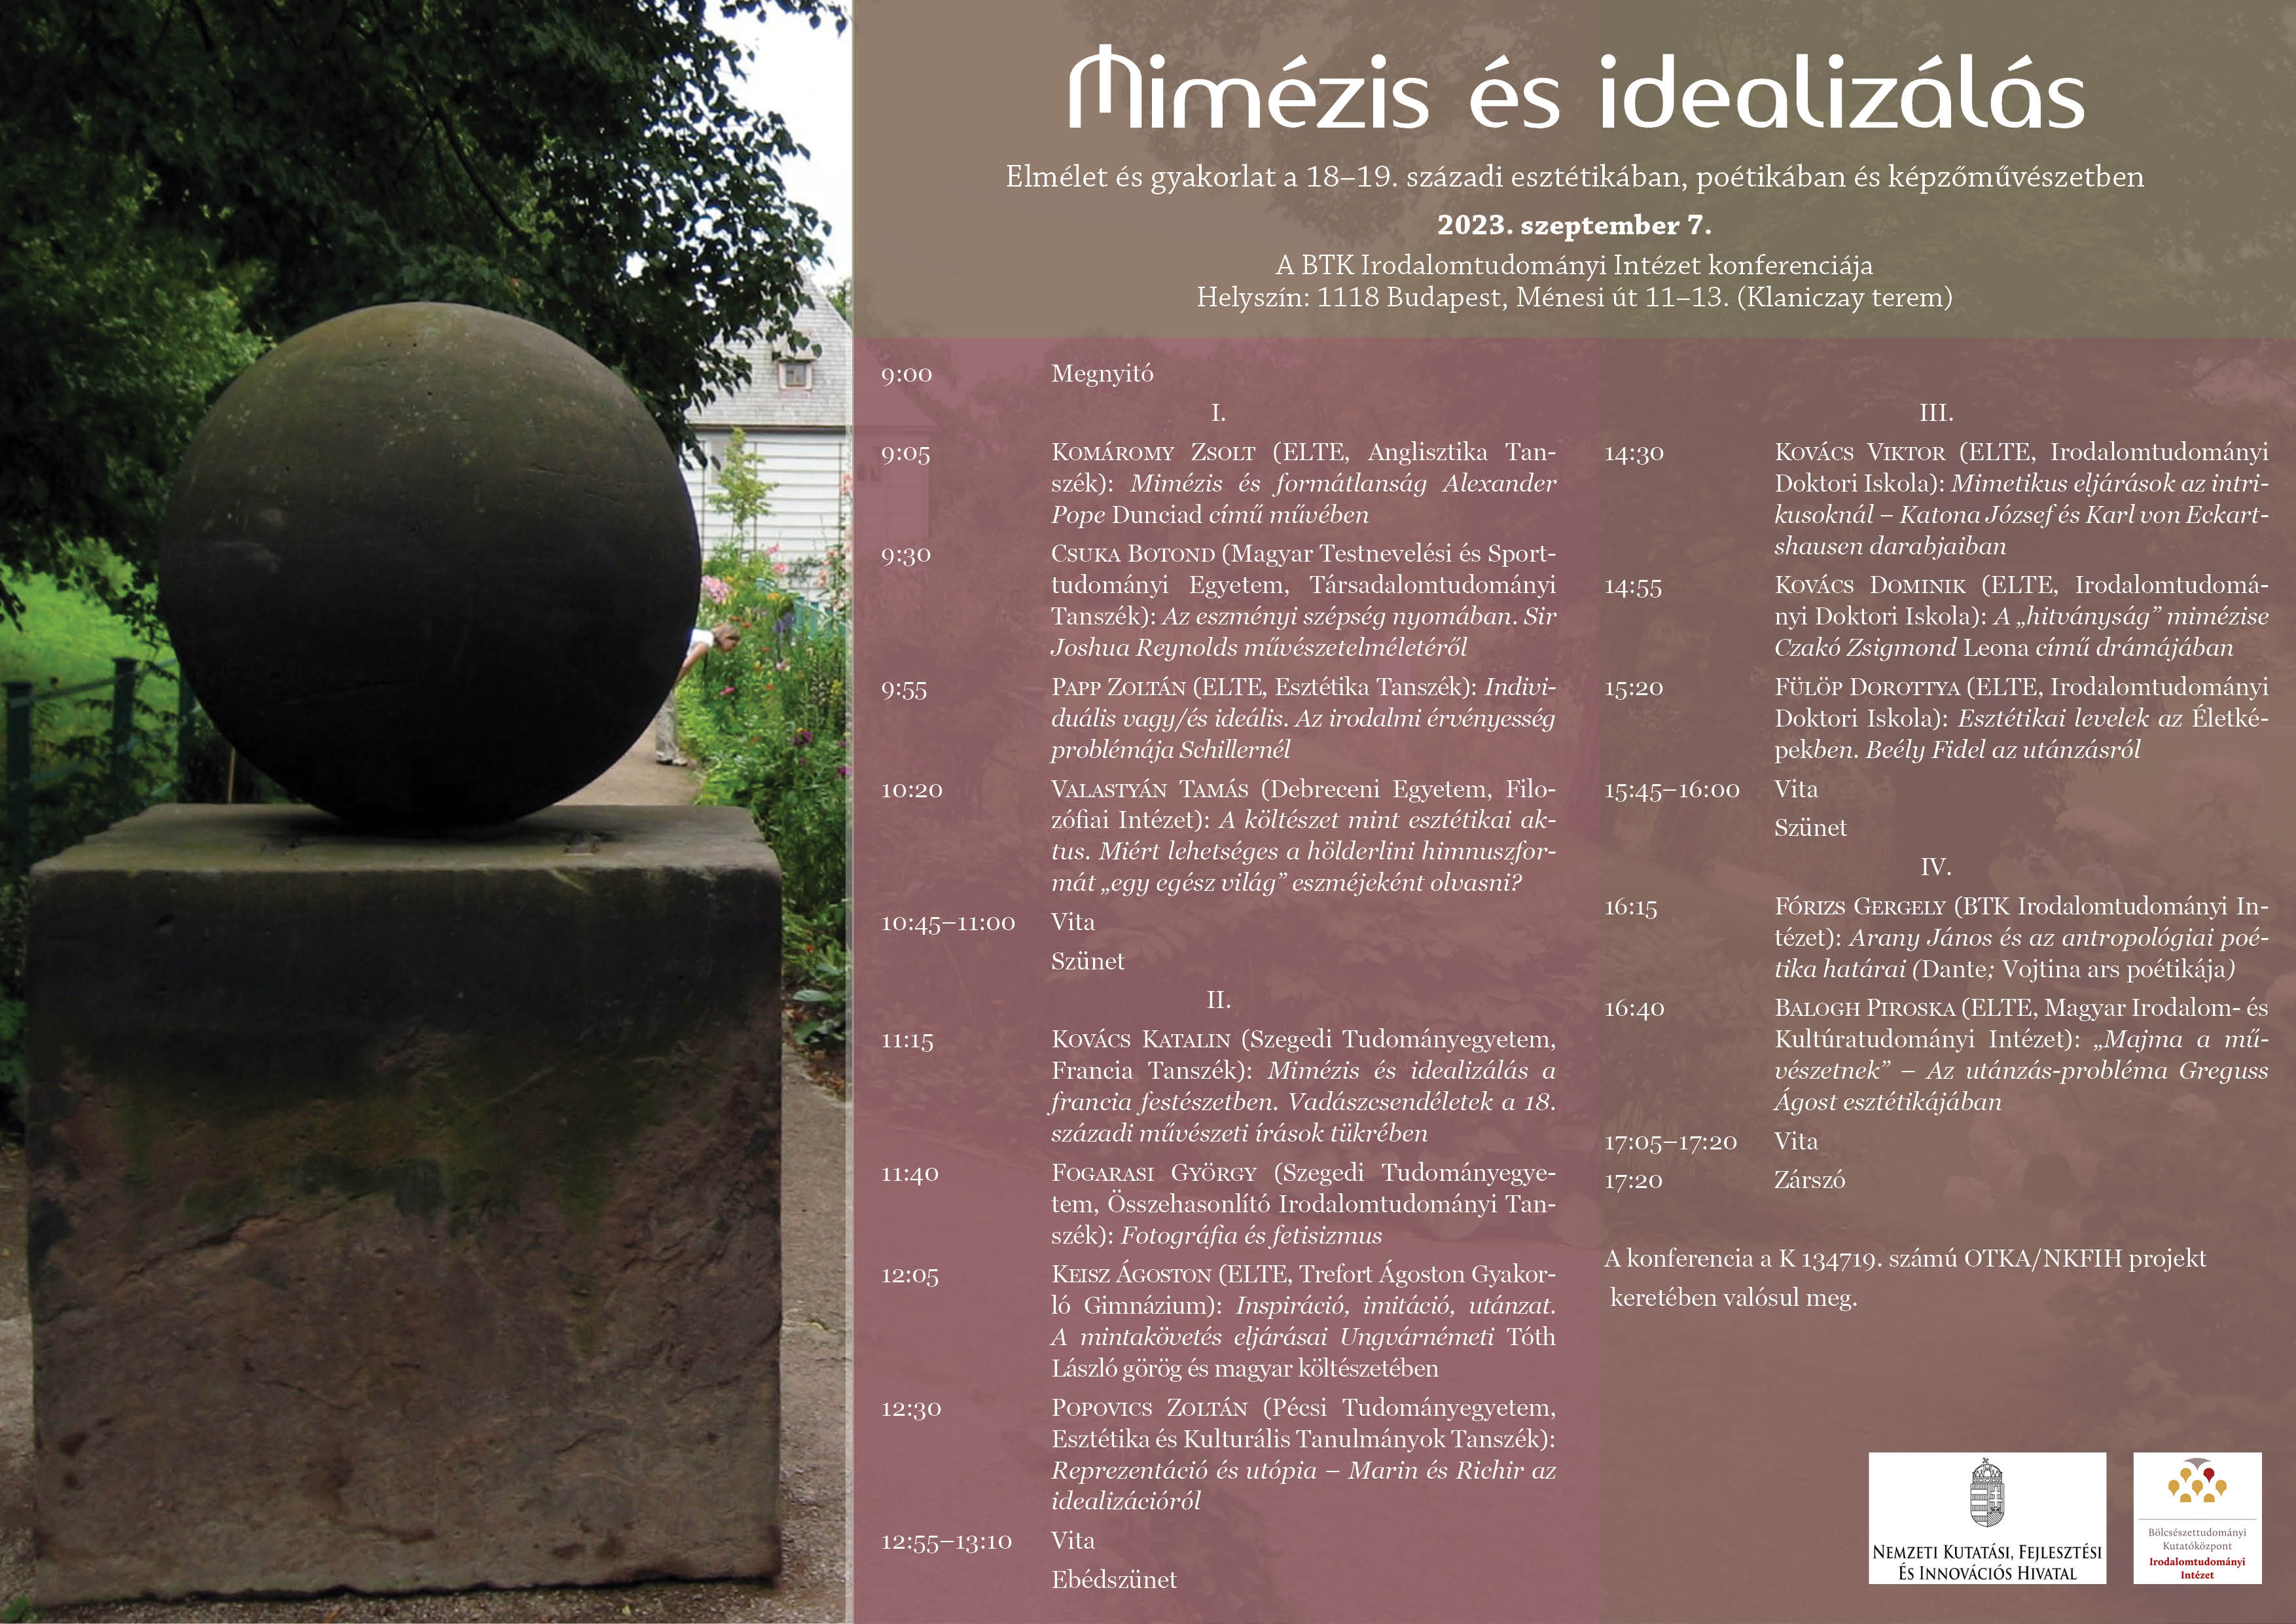 Mimézis és idealizálás  a 18–19. században – tudományos konferencia